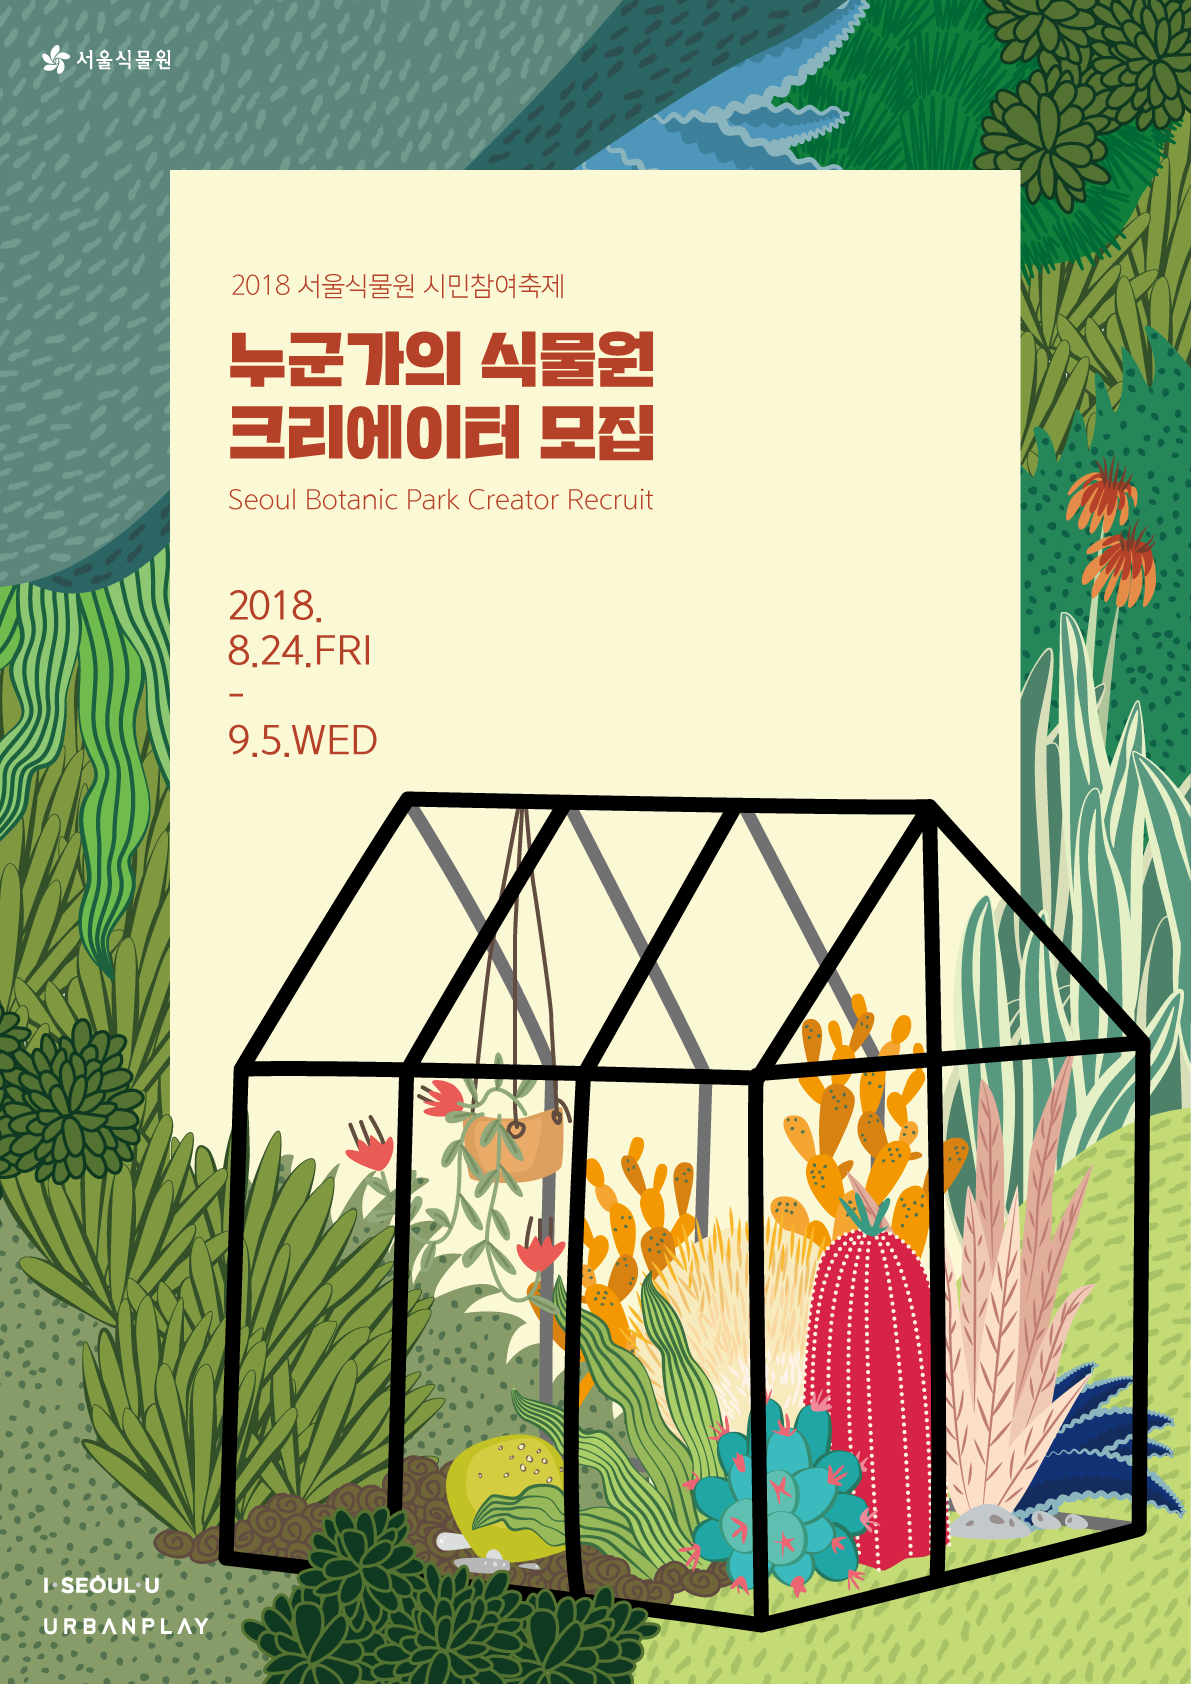 2018 서울식물원 시민참여축제 / 누군가의식물원 크리에이터 모집 / Seoul Botanic Park Creator Recruit 2018.8.24.FRI - 9.5.WED